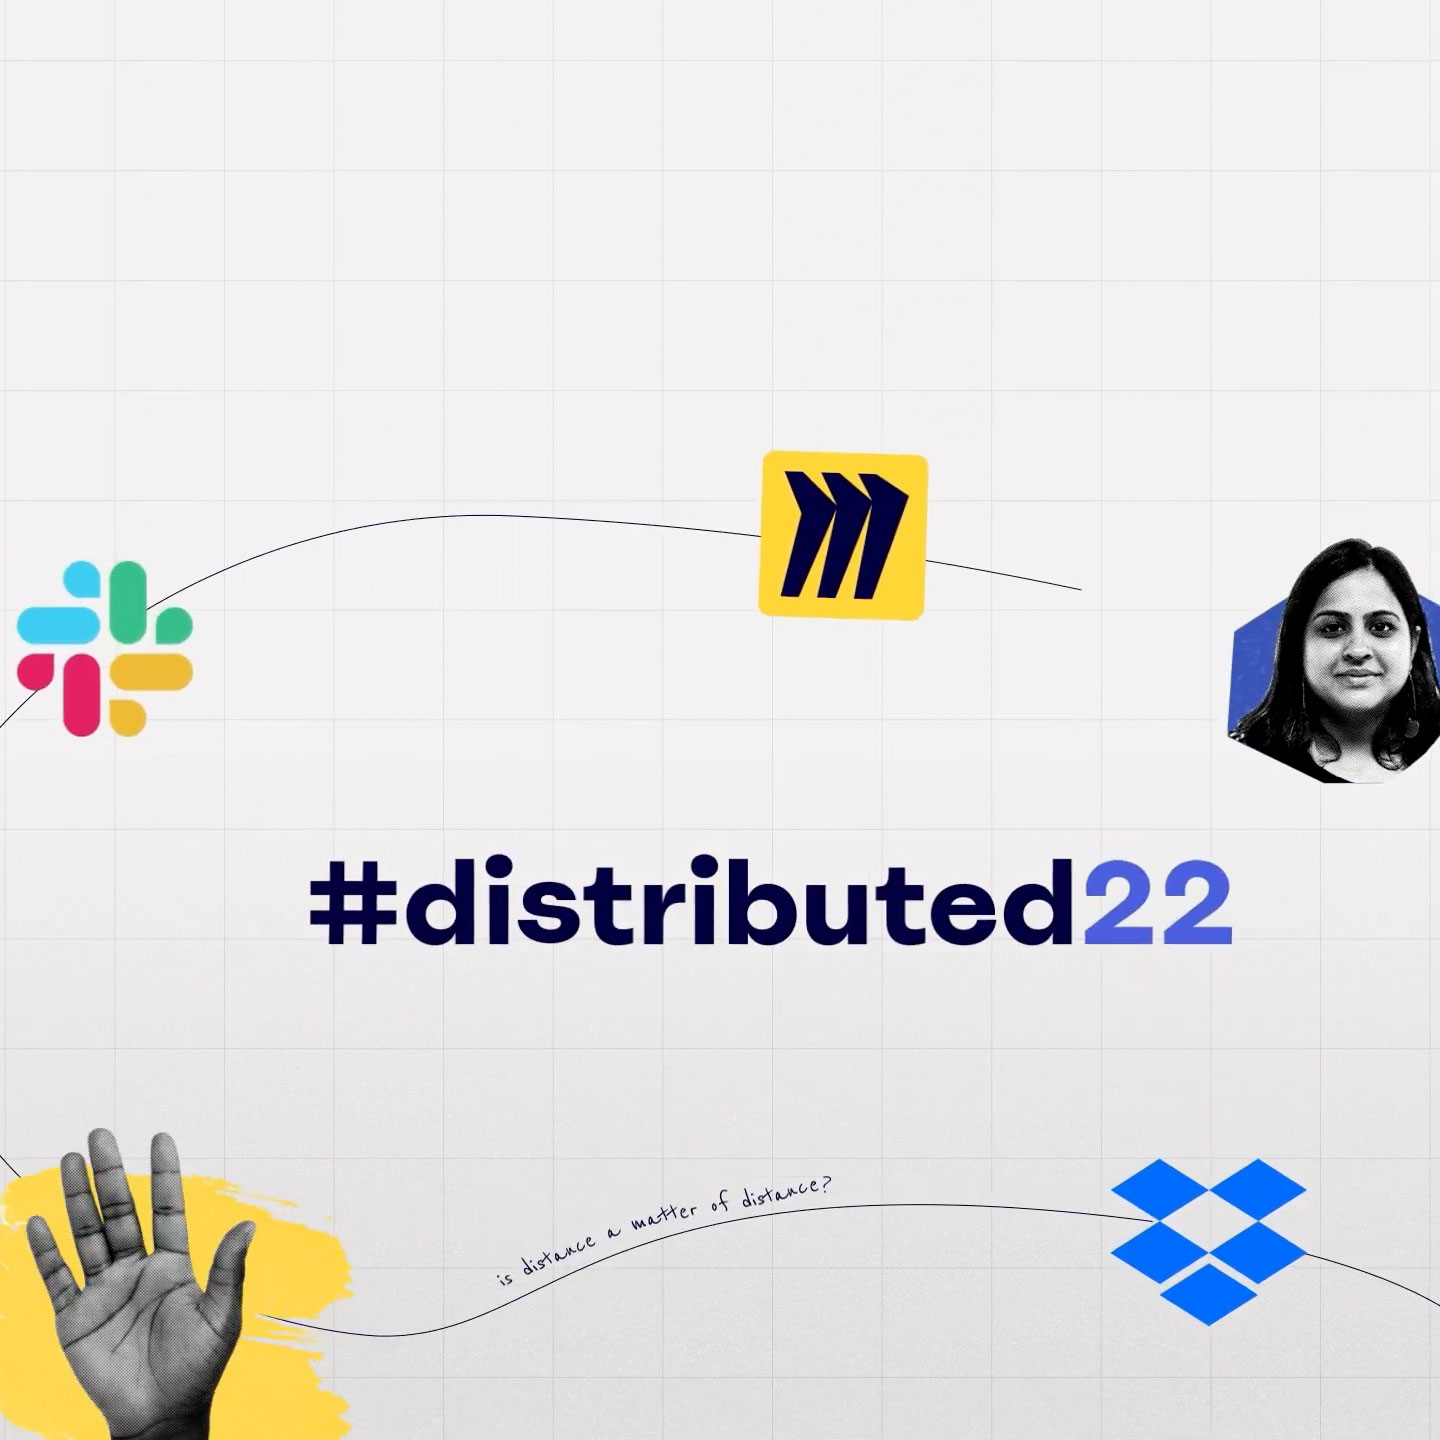 Titelkarte des #distributed22-Events mit Miro-, Slack- und Dropbox-Logos